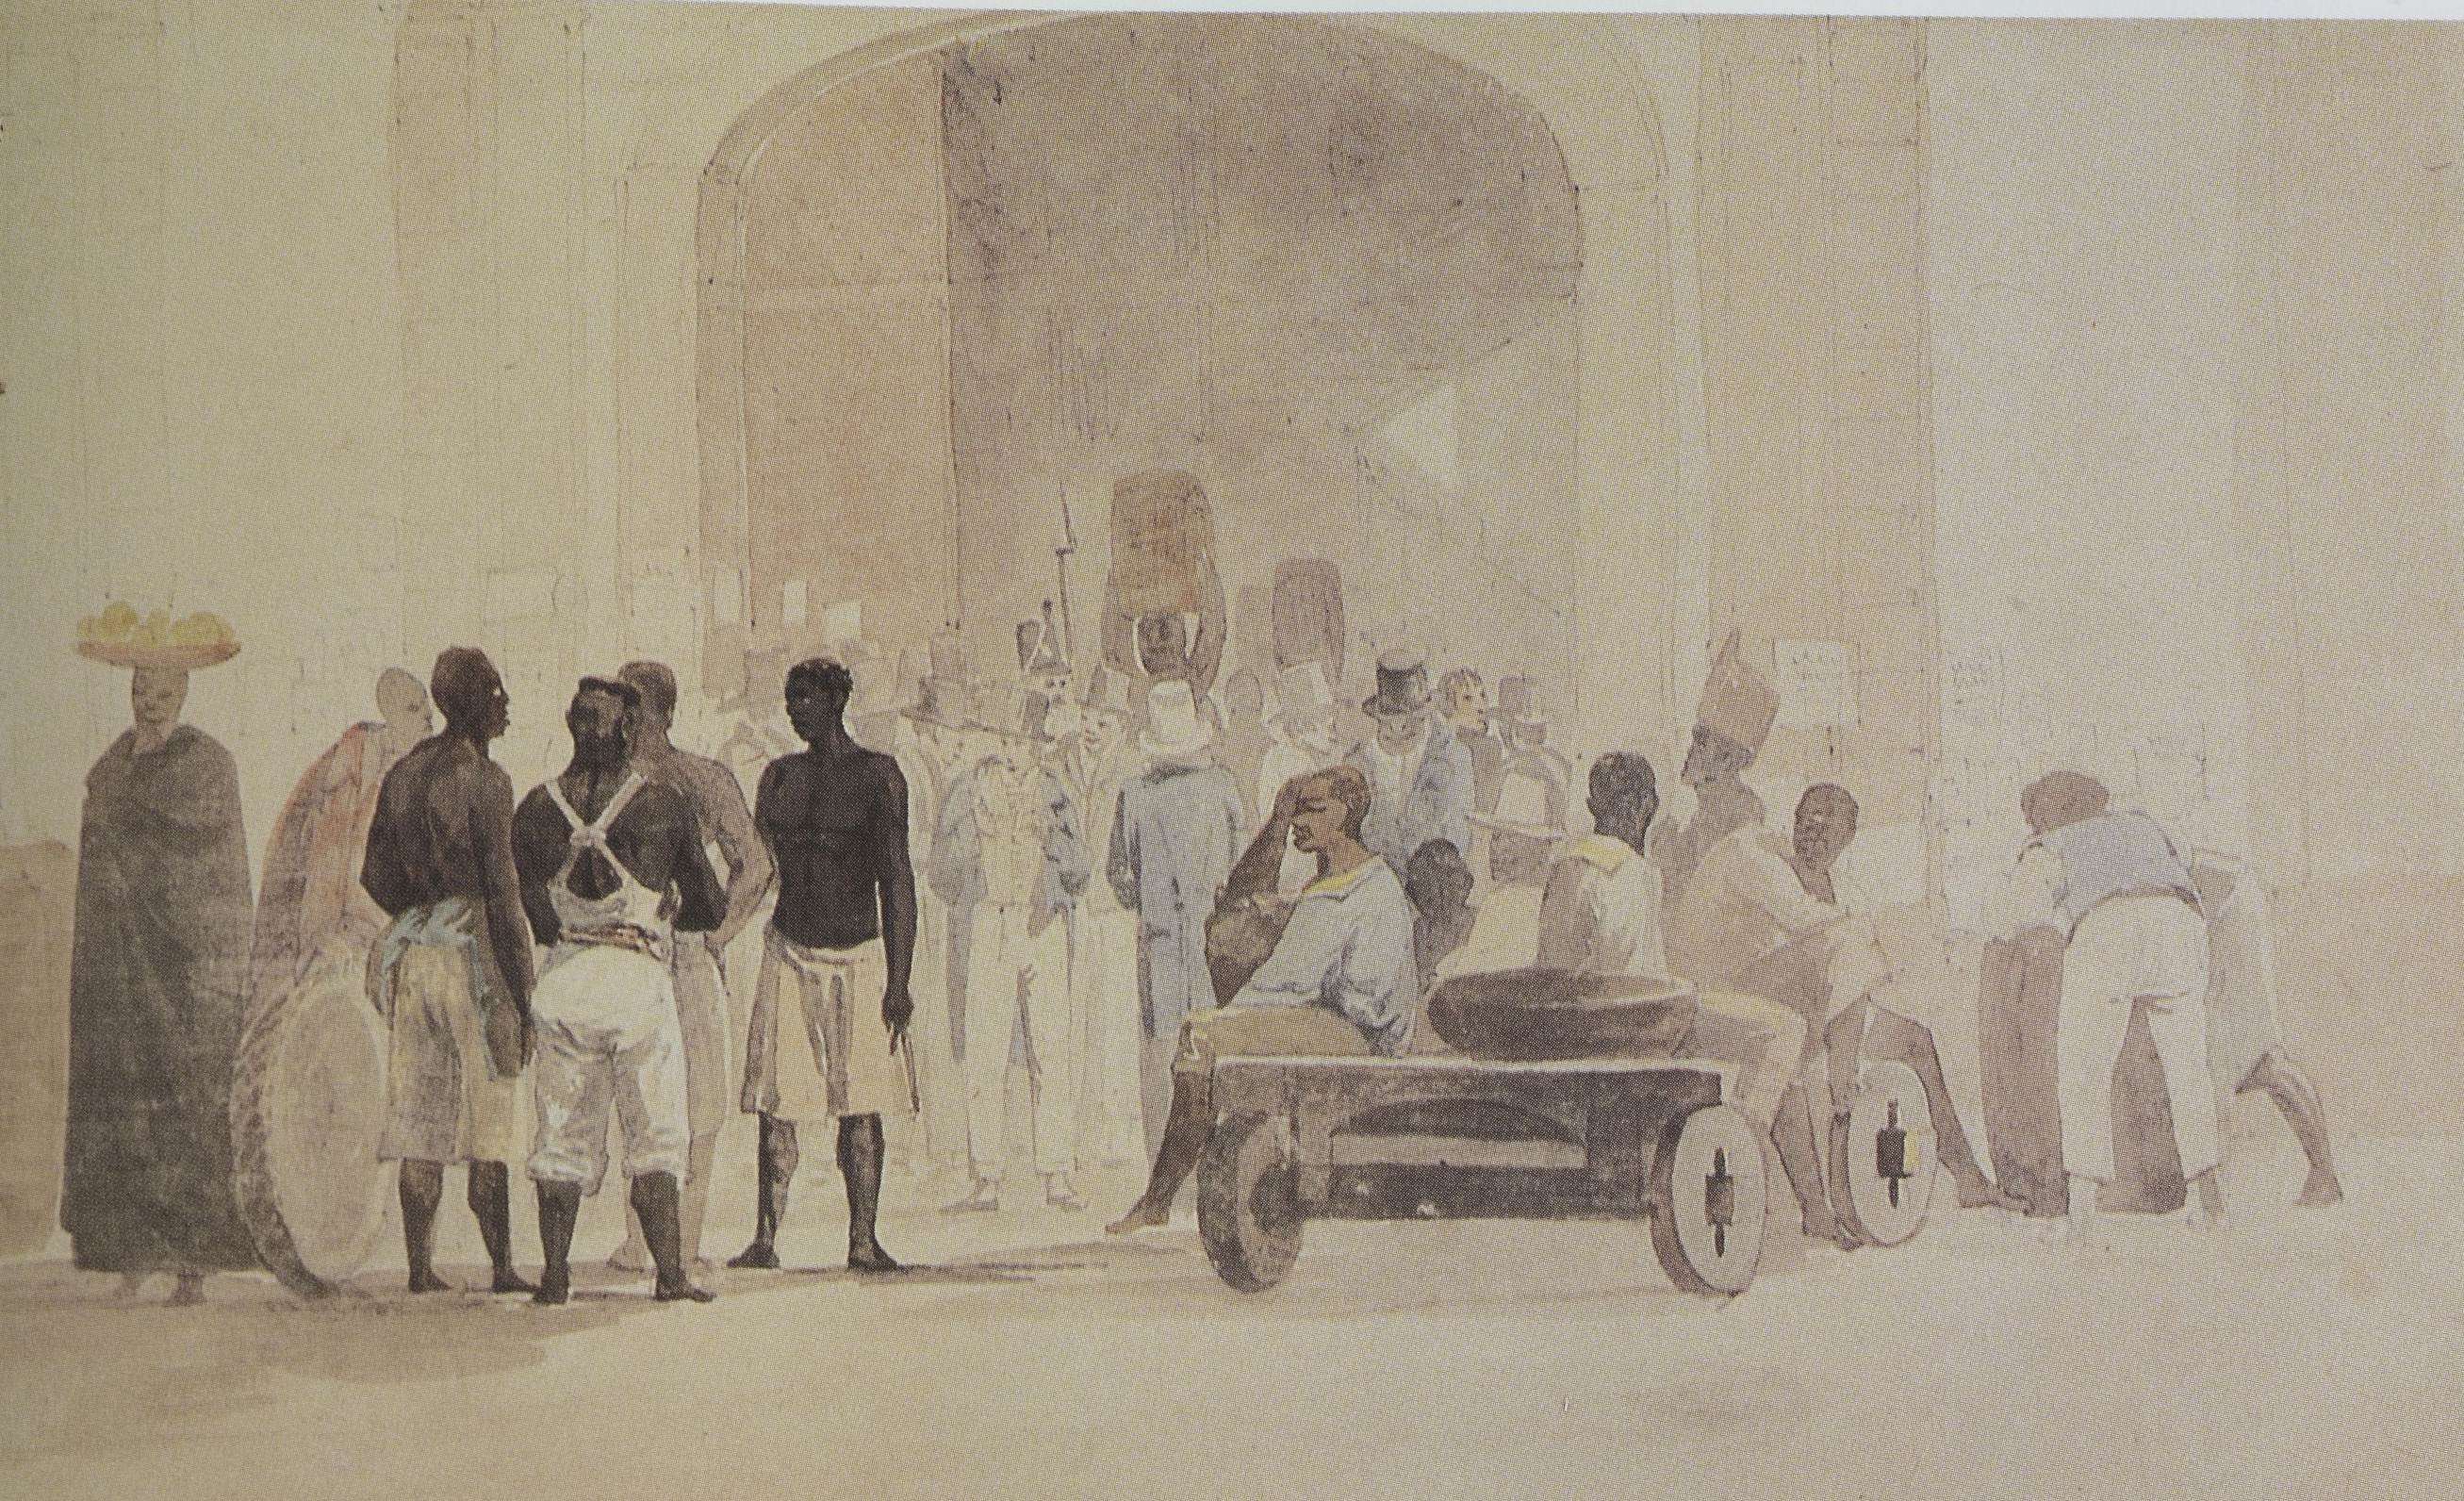 Portão da Alfândega do mercado principal do Rio de Janeiro, na rua Direita, atual Primeiro de Março, século XIX, em aquarela de Thomas Ender